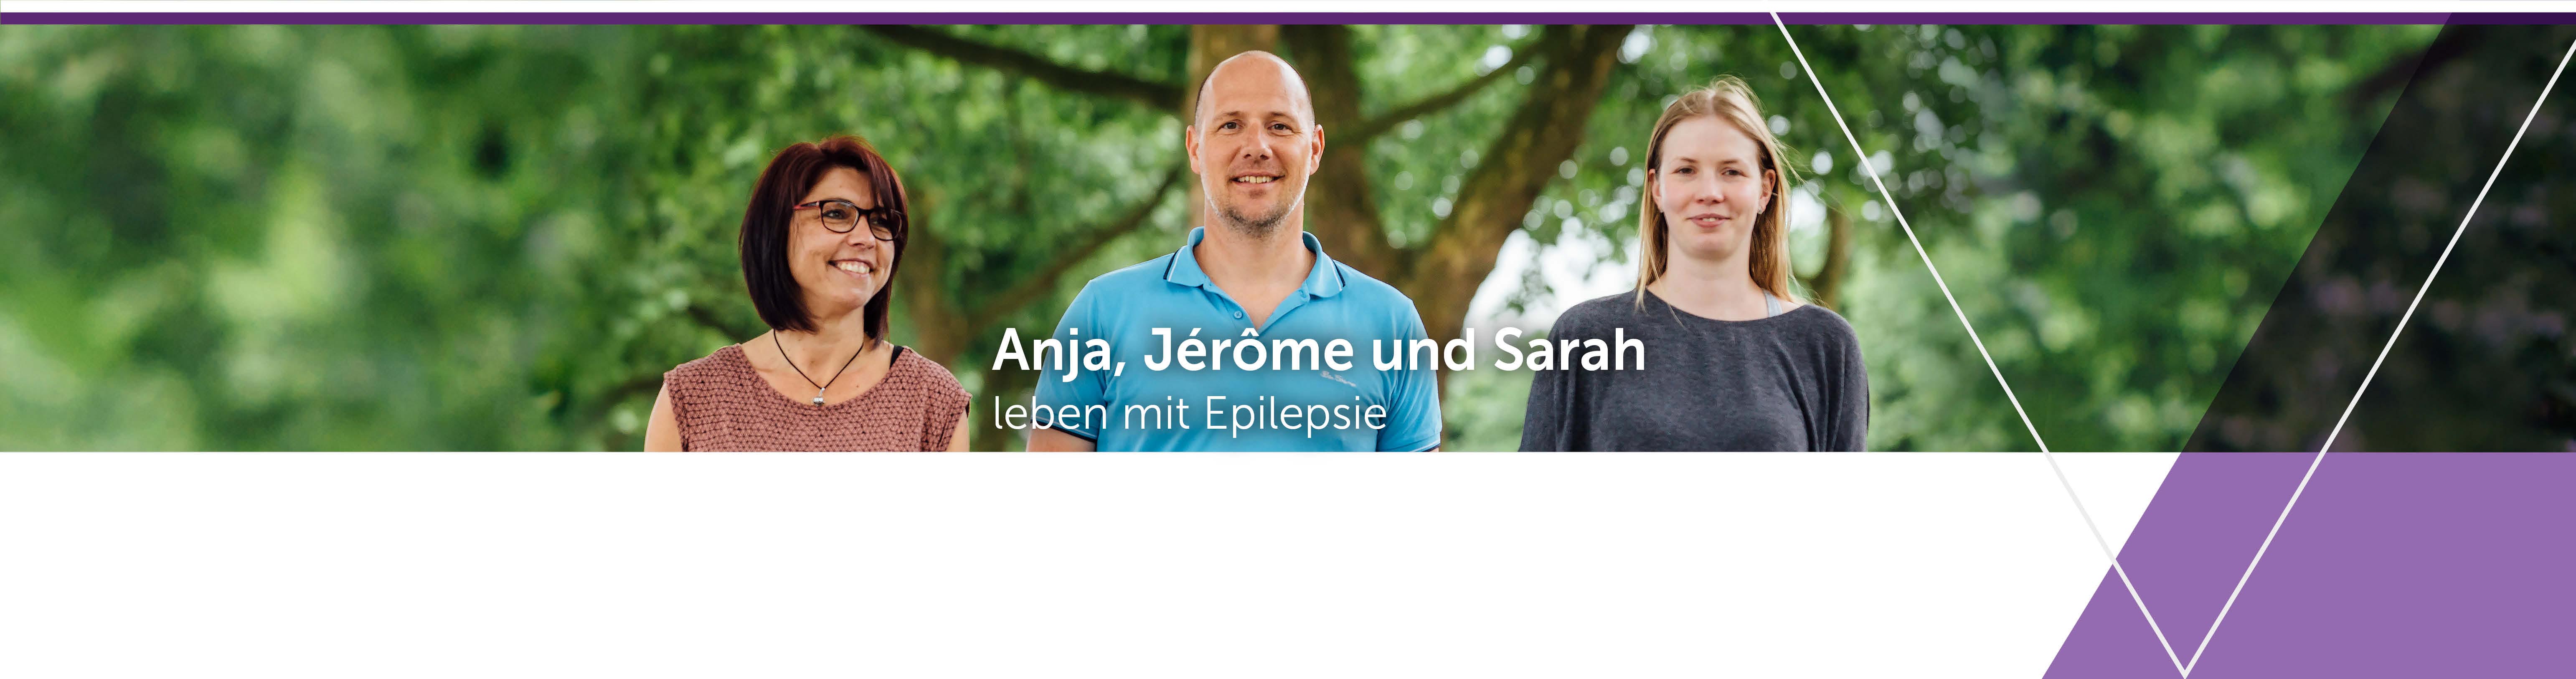 Anja, Jerome und Sarah leben mit Epilepsie